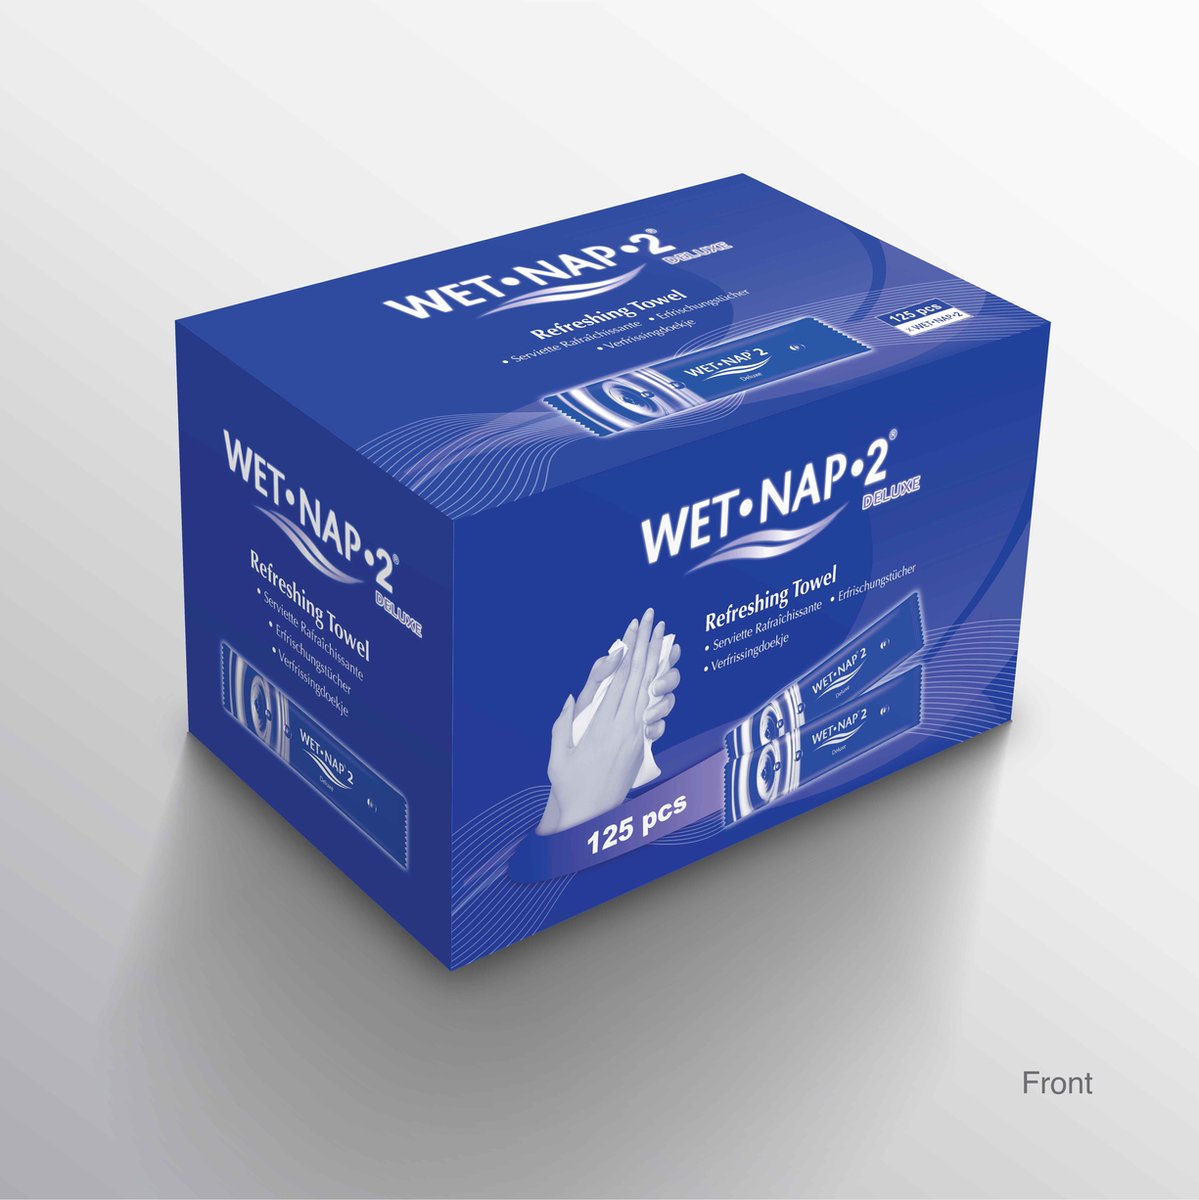 Wet-Nap2 Deluxe verfrissingsdoekjes 125 stuks - Wet-Nap